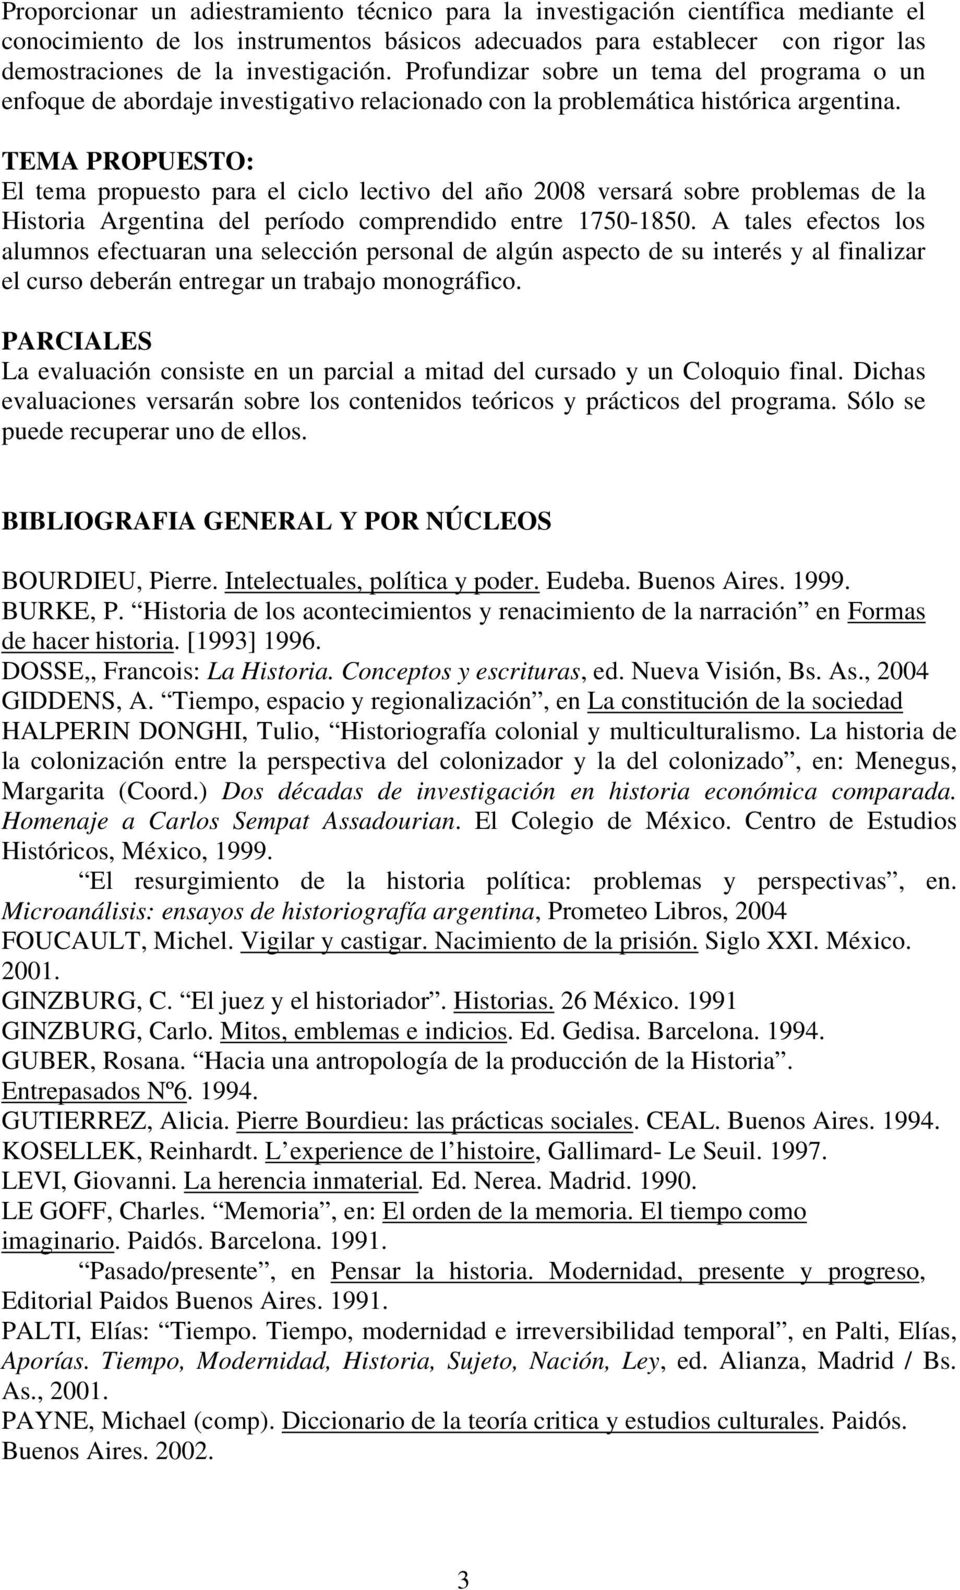 TEMA PROPUESTO: El tema propuesto para el ciclo lectivo del año 2008 versará sobre problemas de la Historia Argentina del período comprendido entre 1750-1850.